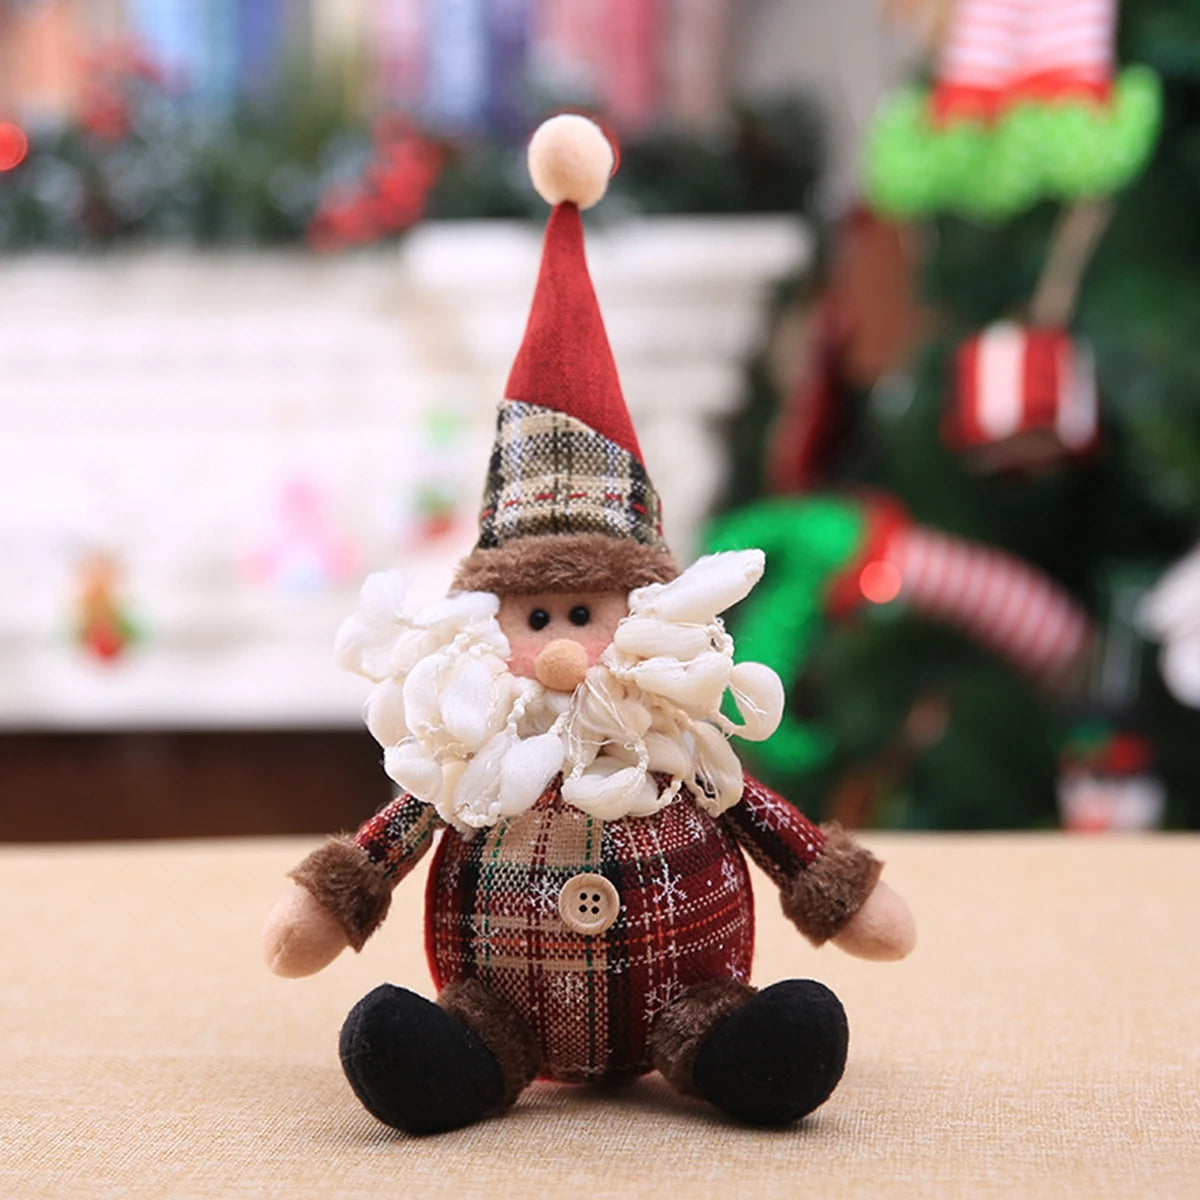 Santa Claus Chirstmas Doll